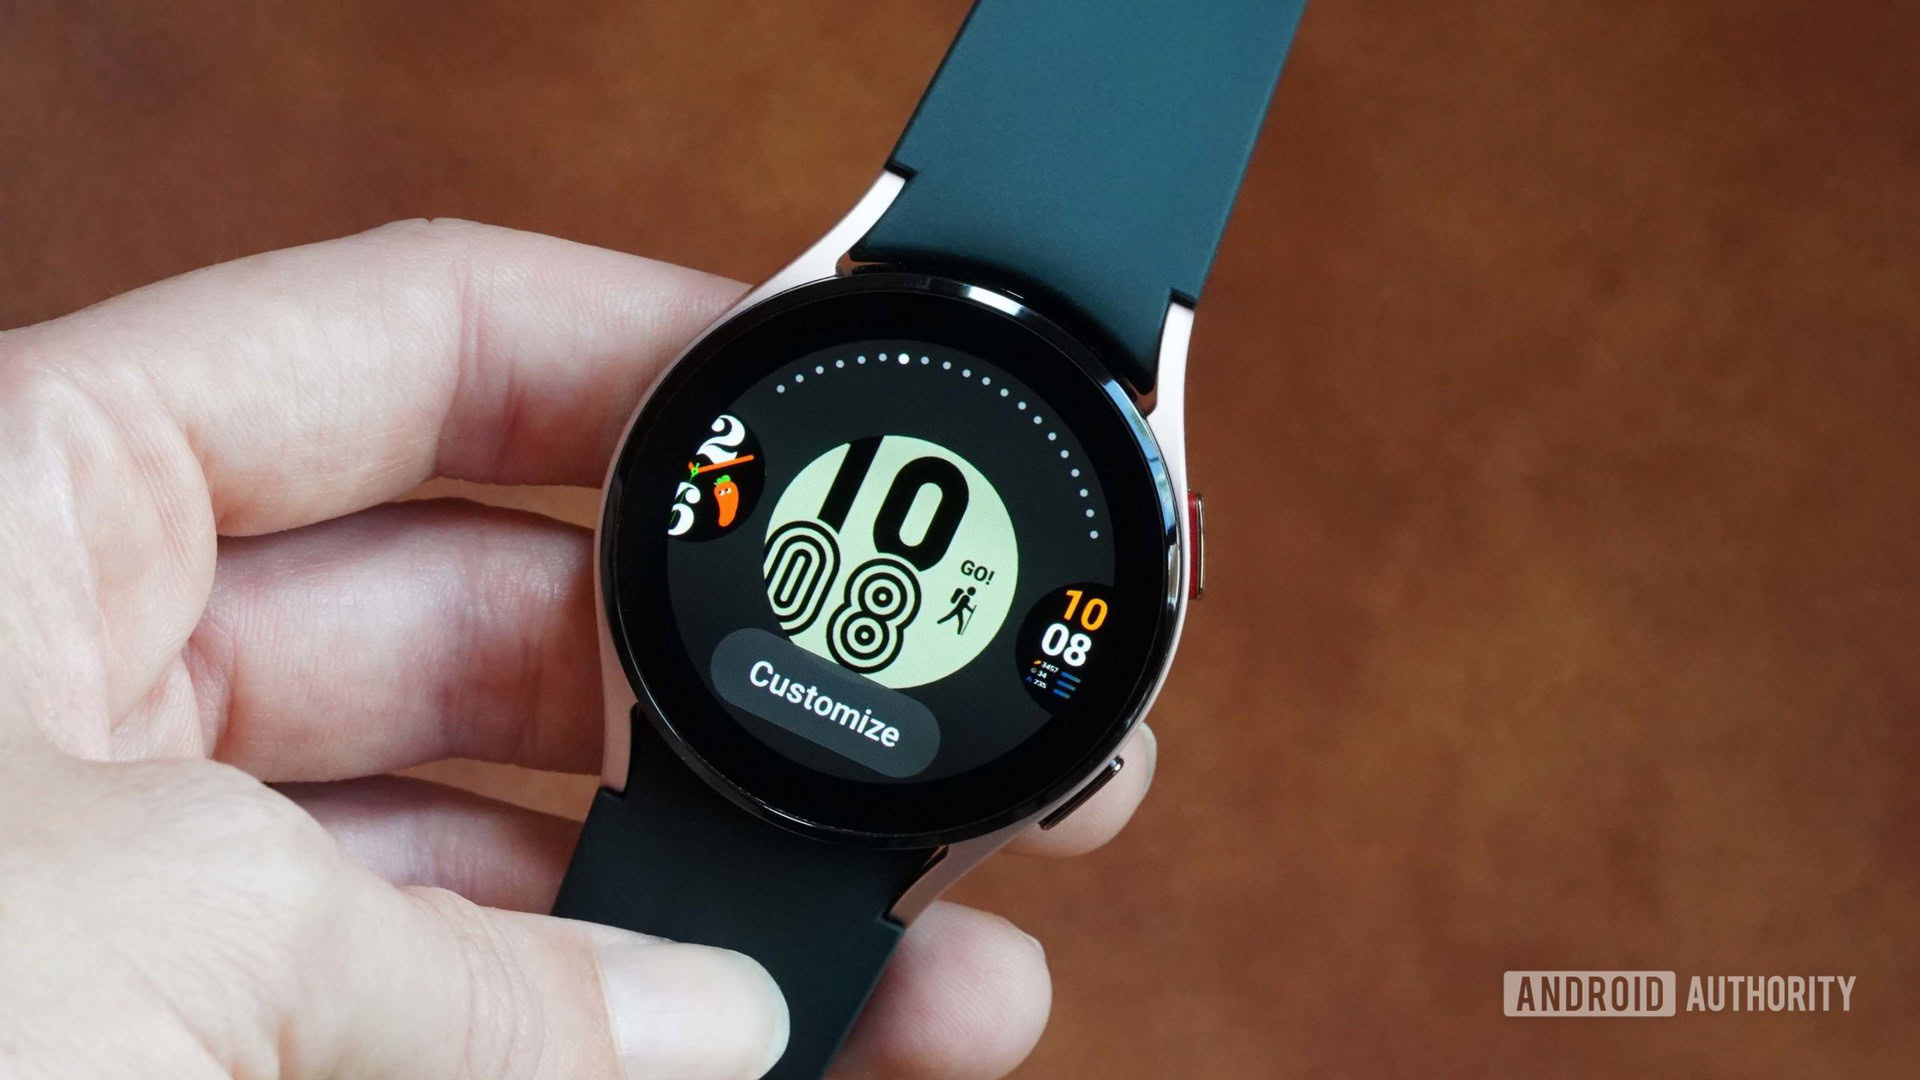 Galaxy Watch faces rất đa dạng và mang tới cho người dùng nhiều sự lựa chọn để tùy biến giao diện đồng hồ của mình. Bạn có thể chọn giữa các mẫu đồng hồ truyền thống, hiện đại hoặc thực tế ảo để tạo ra một chiếc đồng hồ đặc biệt hoàn toàn phù hợp với phong cách của mình.